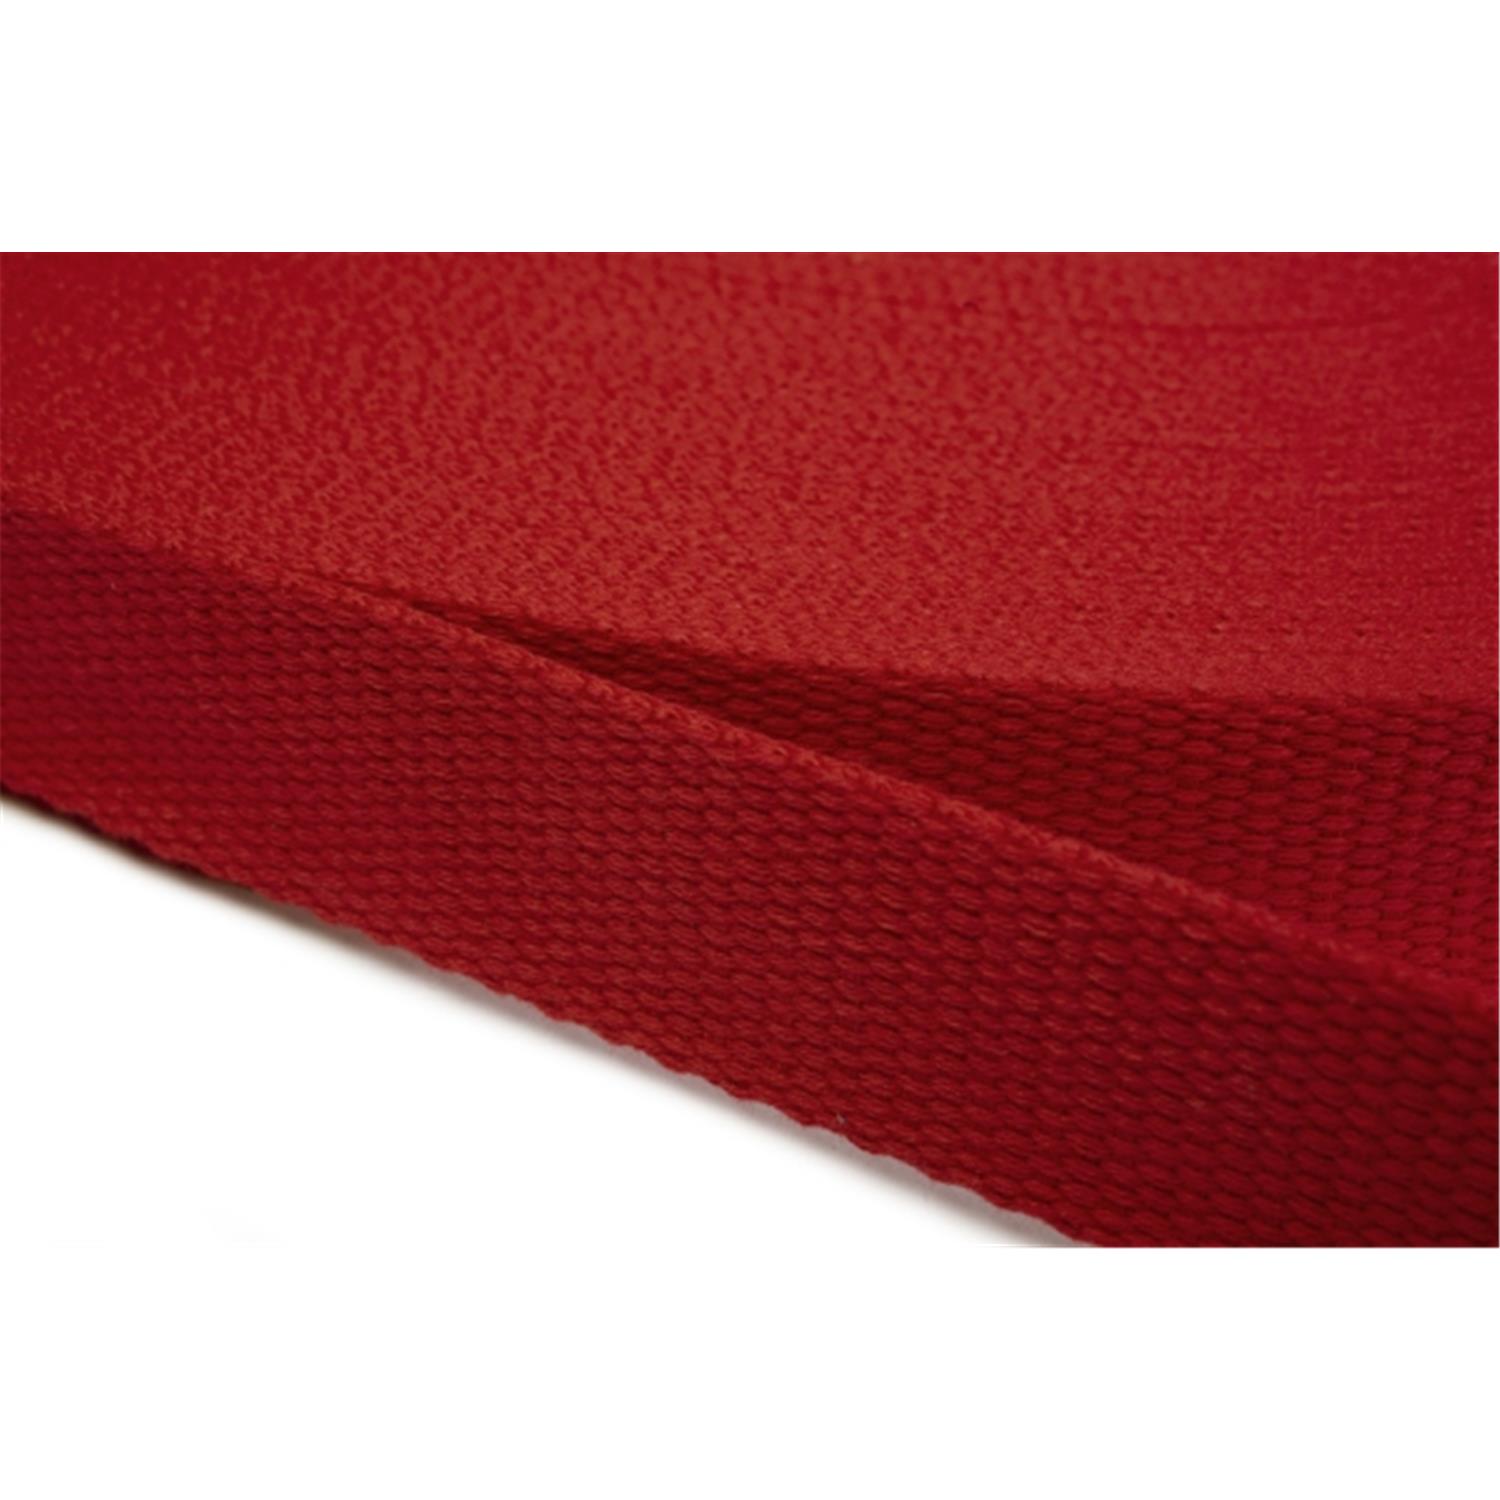 Gurtband aus Baumwolle 10mm in 20 Farben 10 - rot 6 Meter